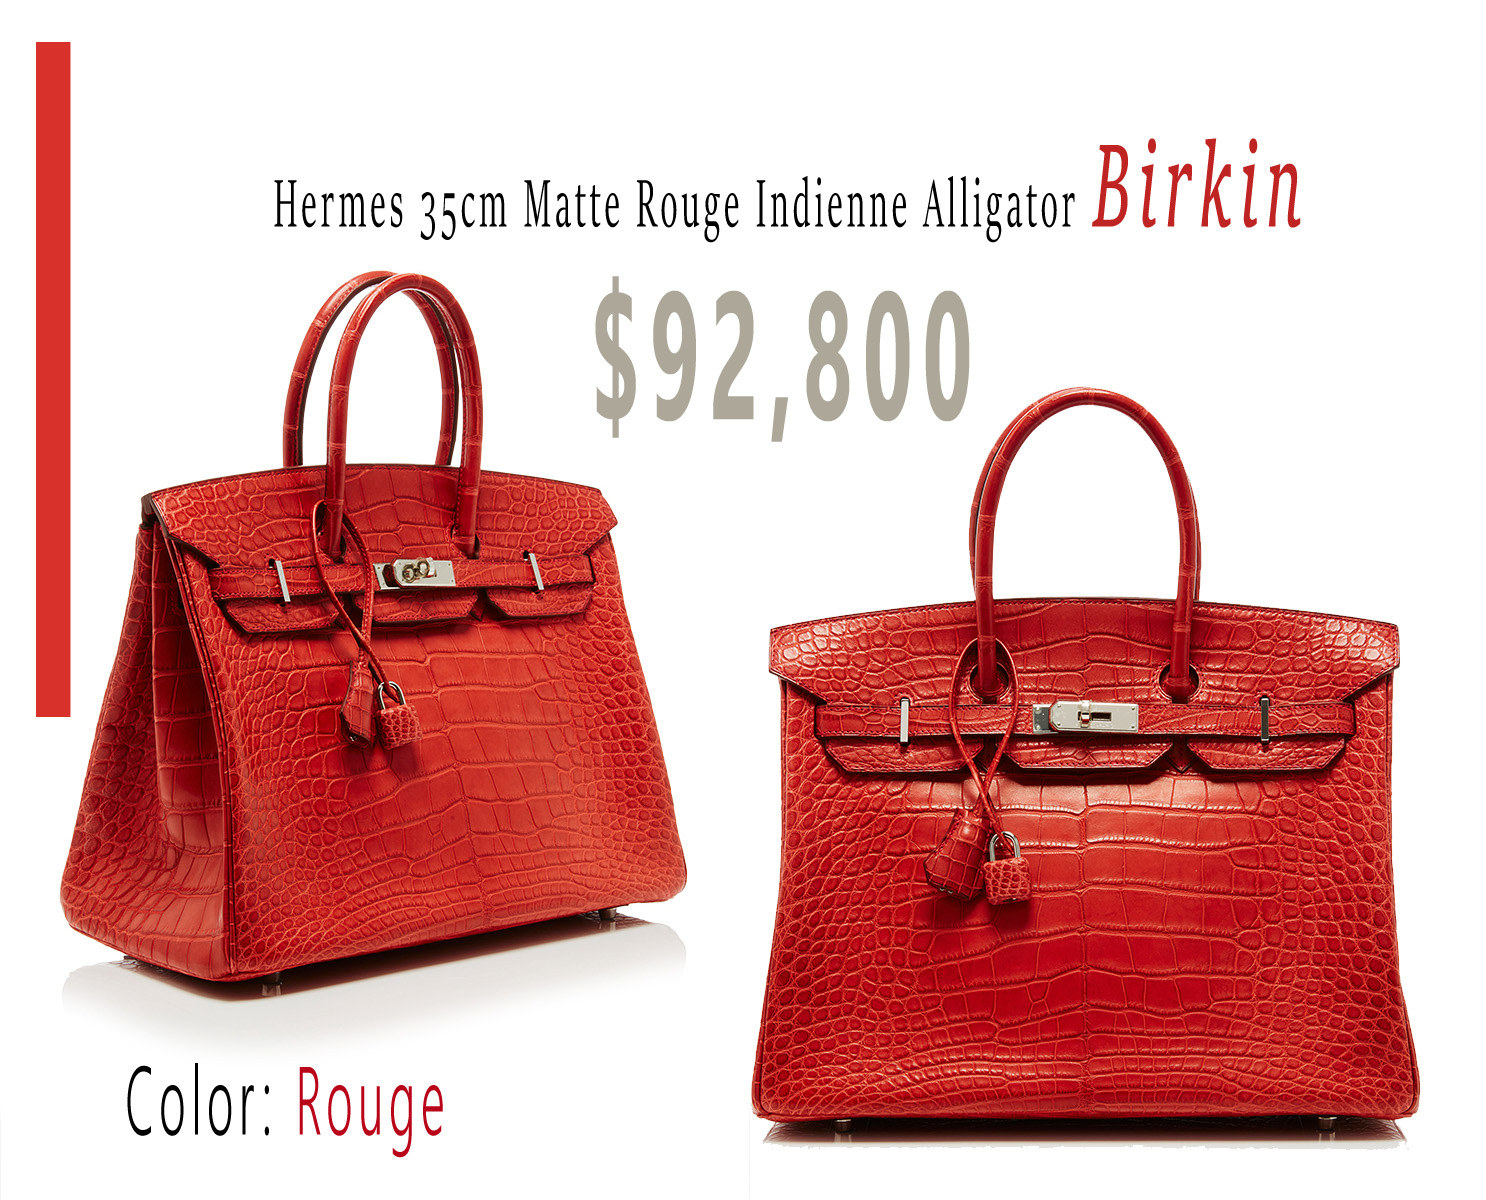 Hermes 35cm Matte Rouge Indienne Alligator Birkin 92800